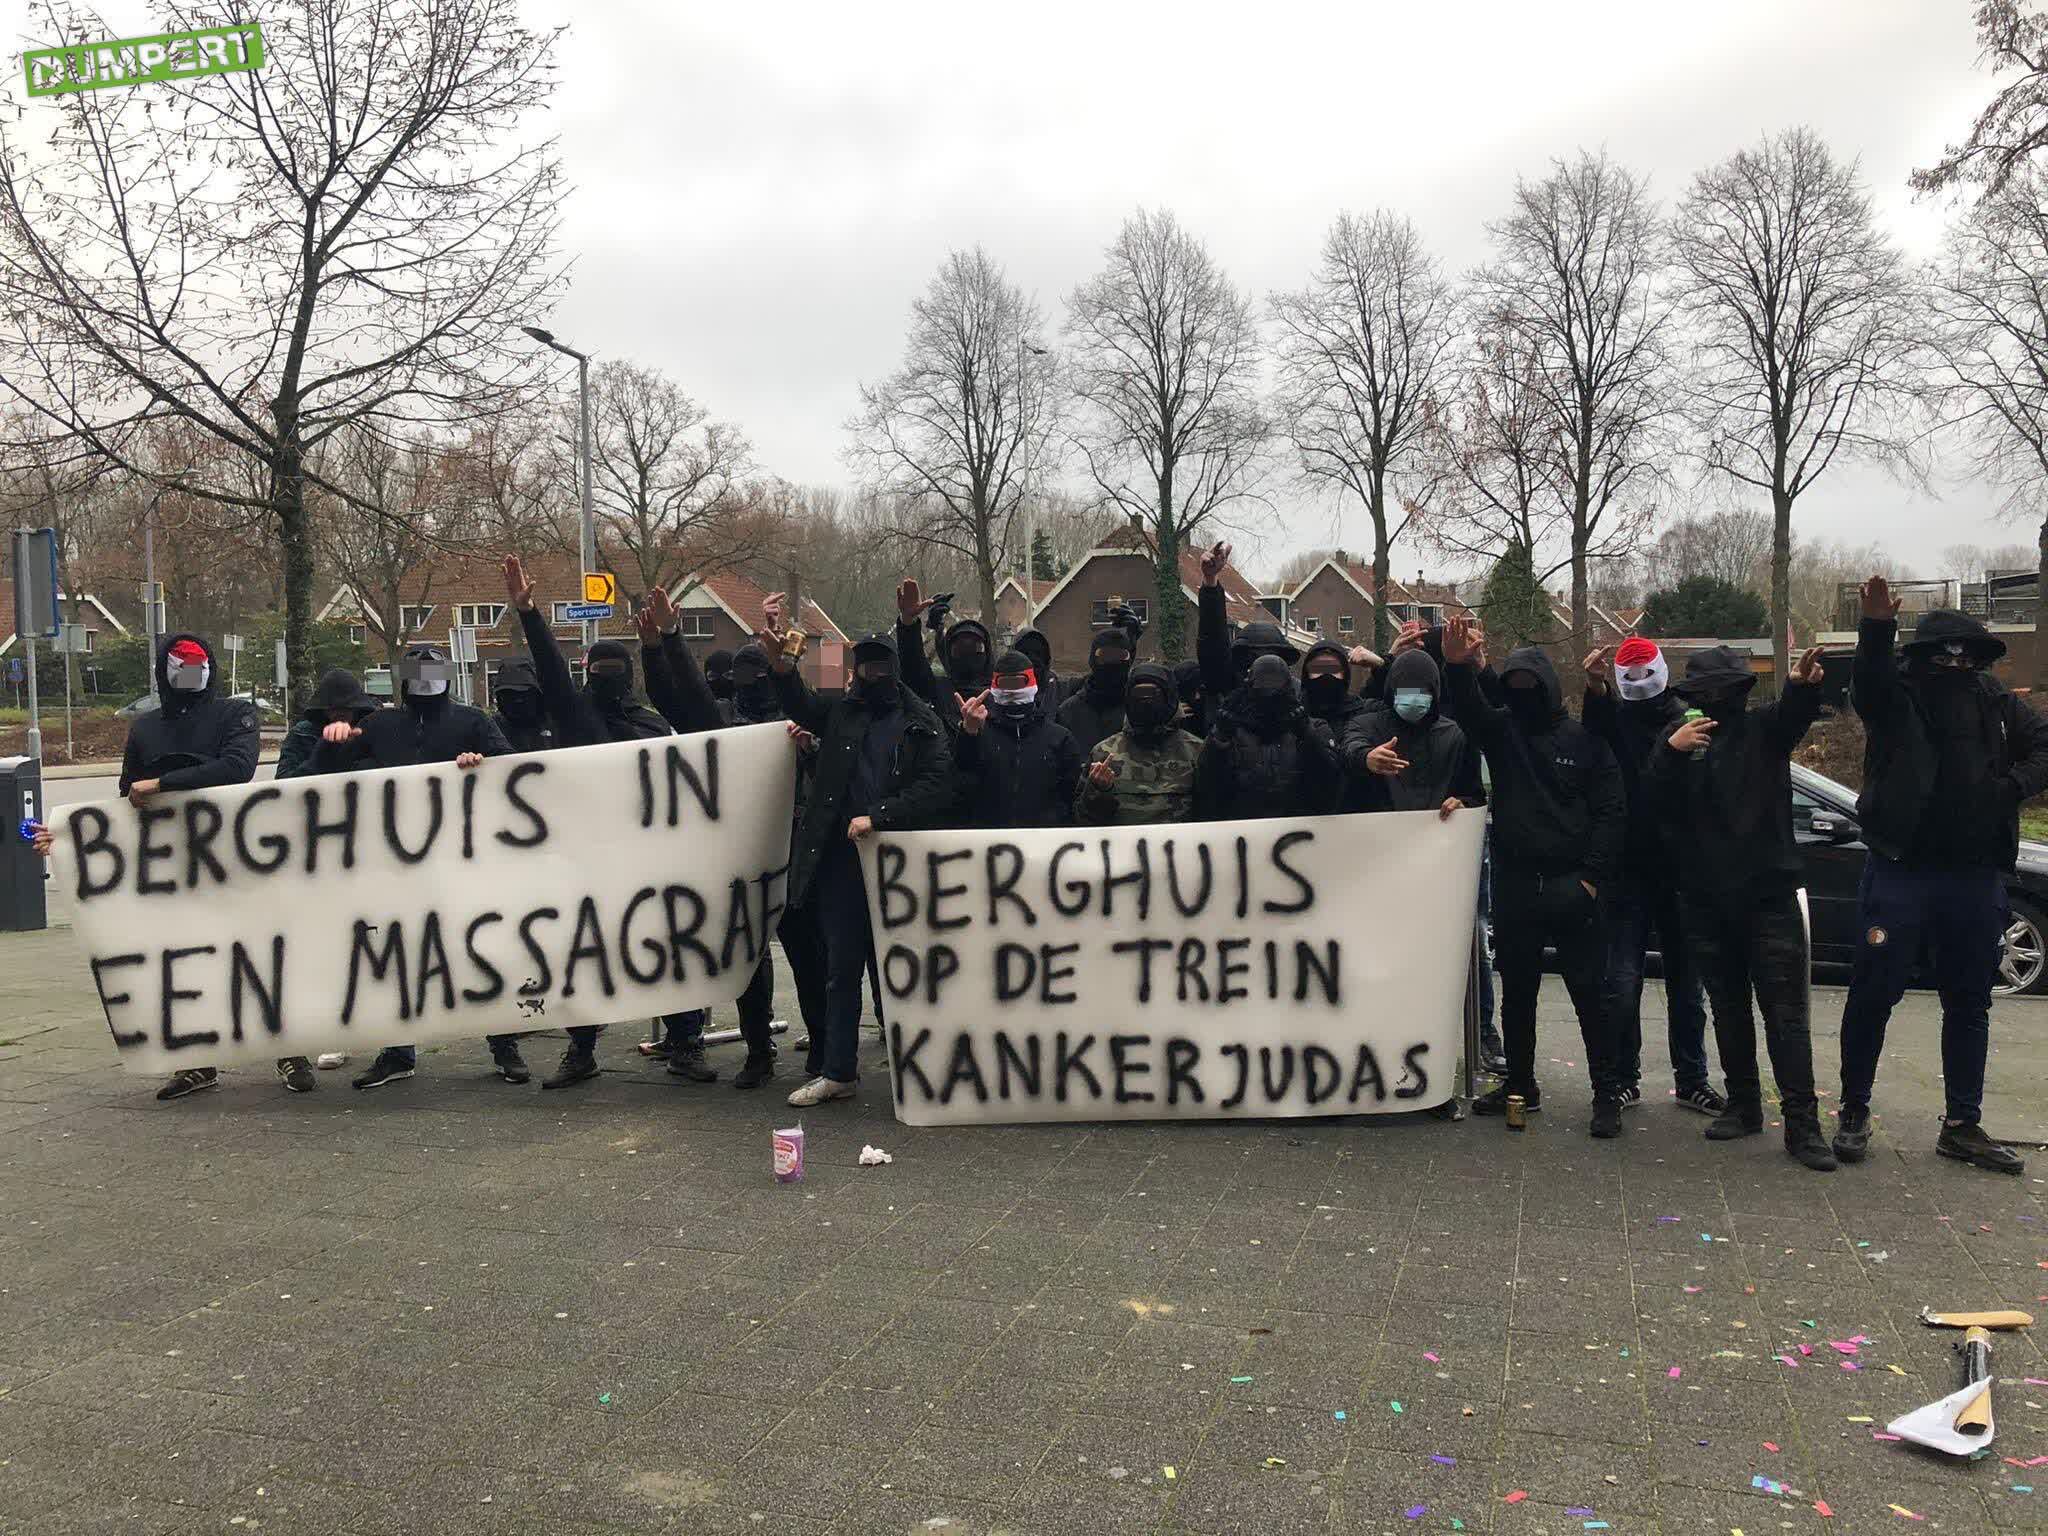 Feyenoorders met een boodschap